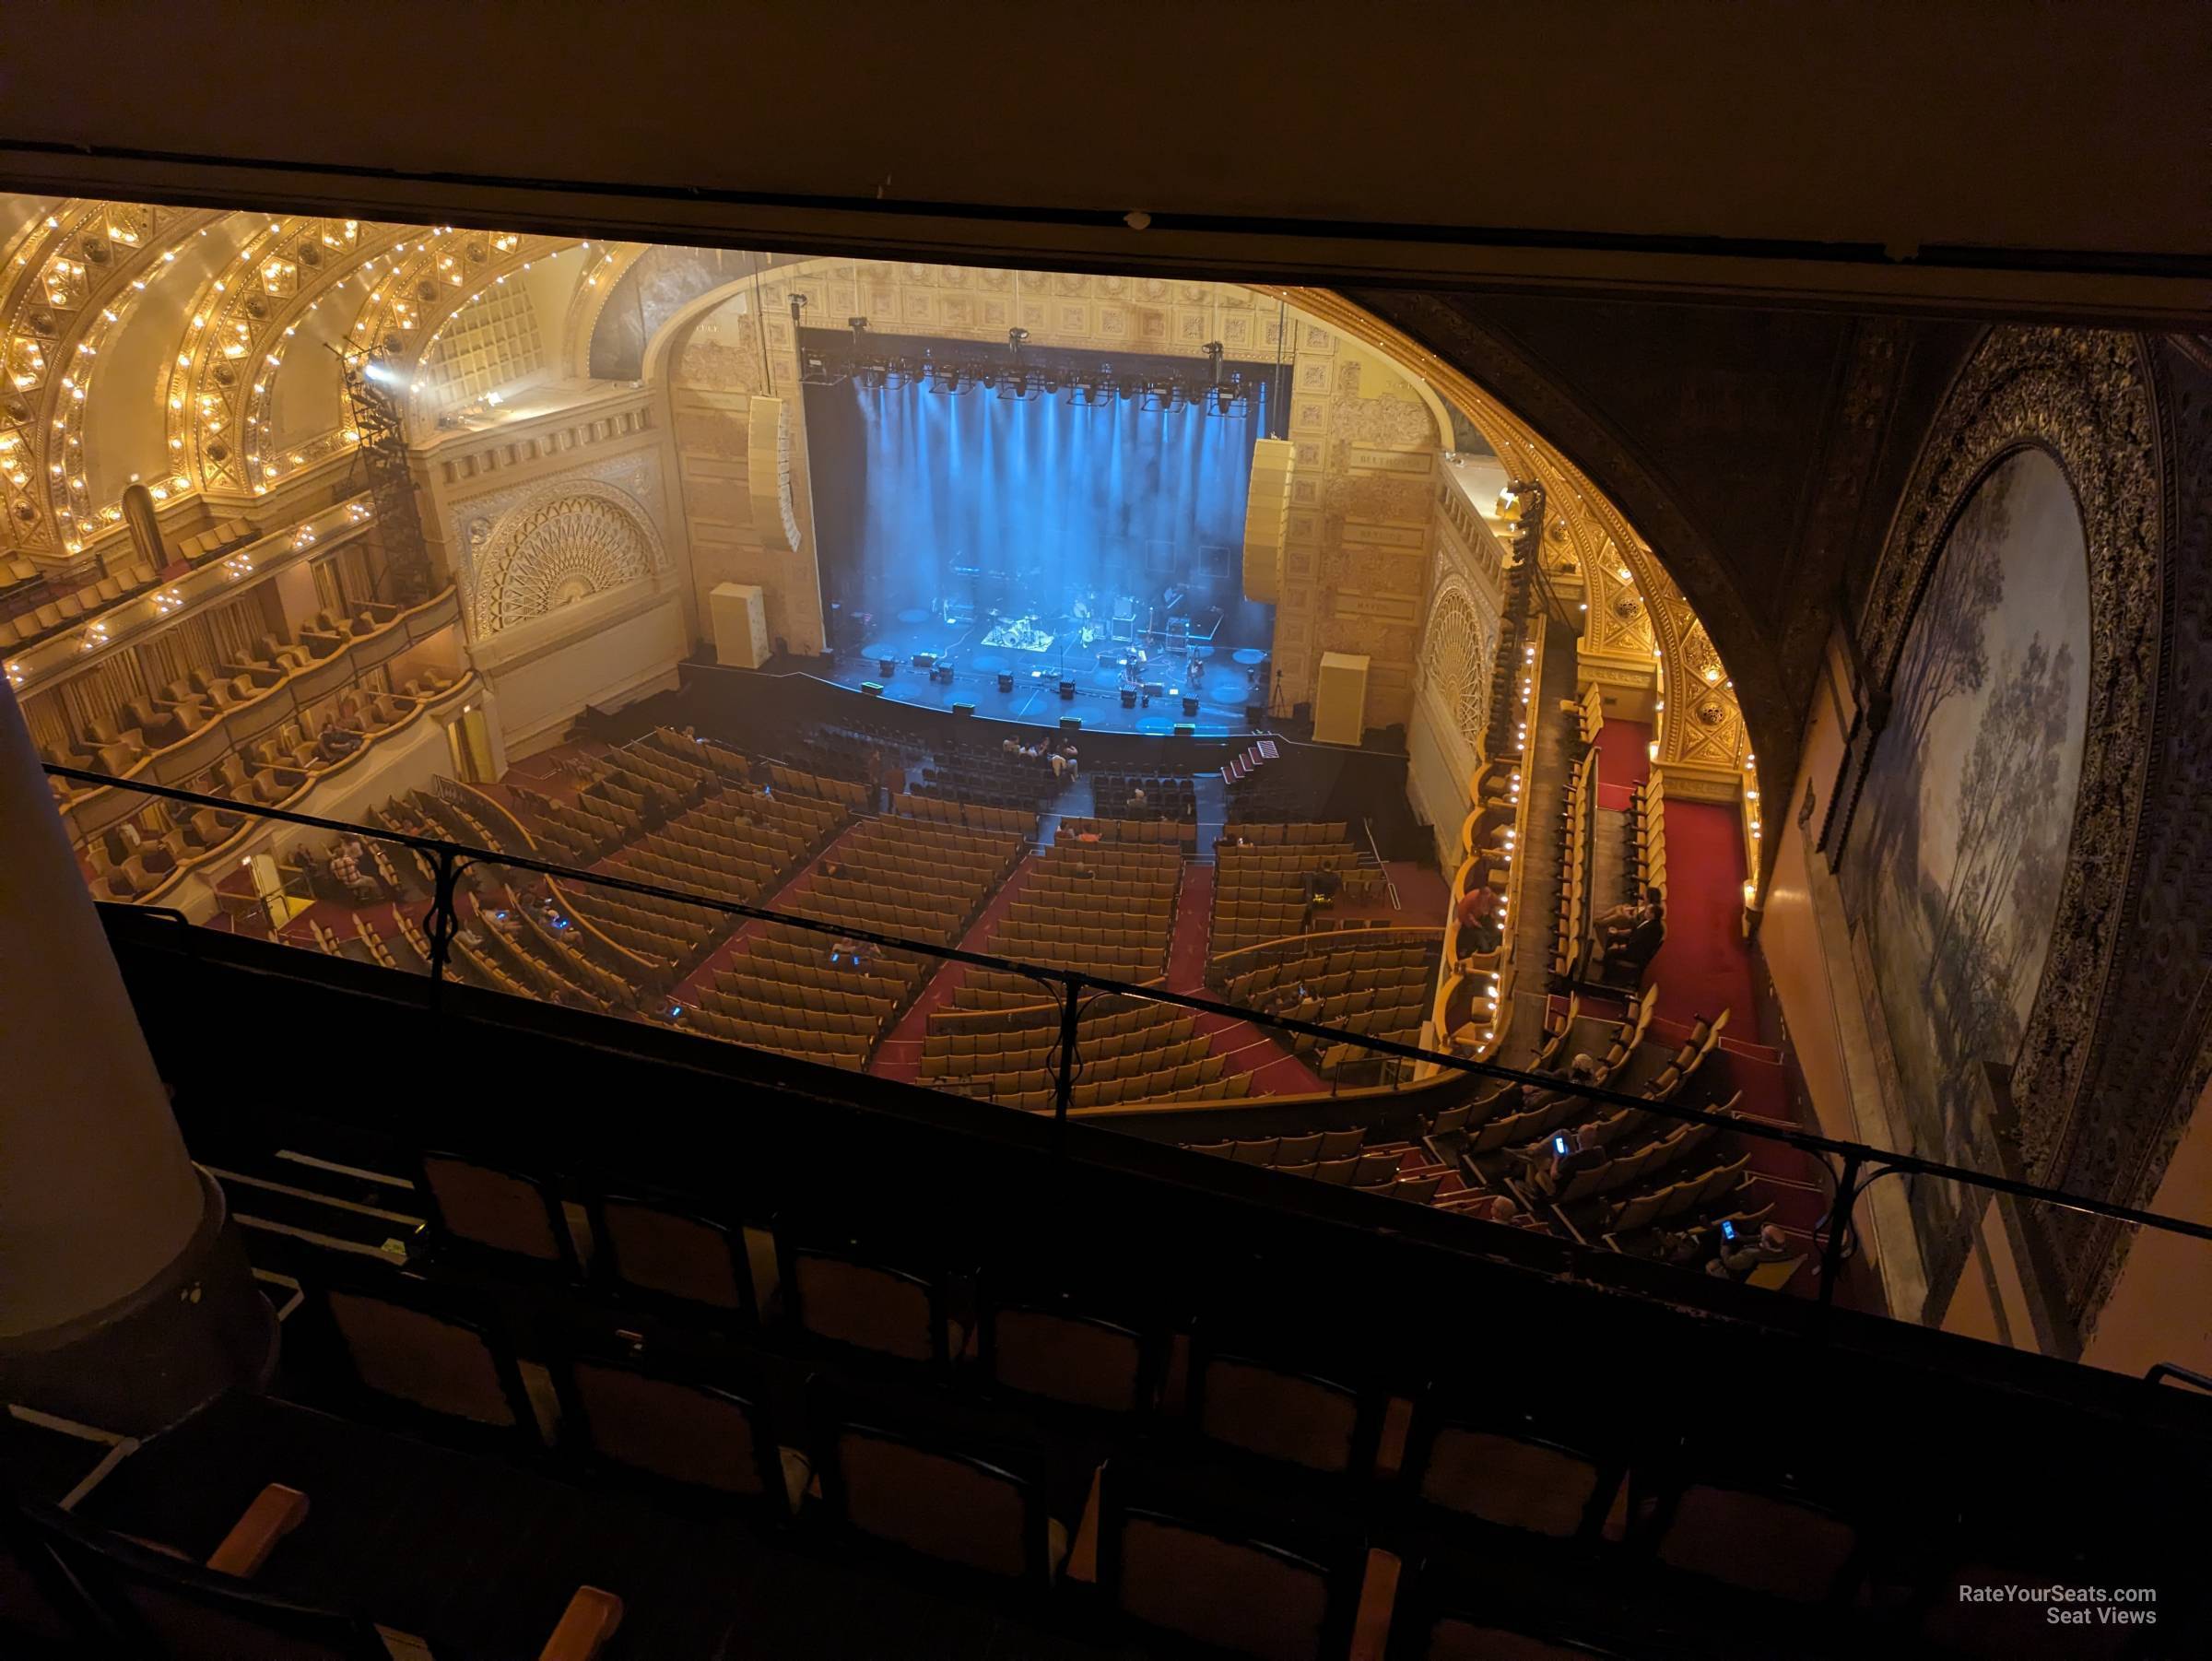 ublc r, row e seat view  - auditorium theatre